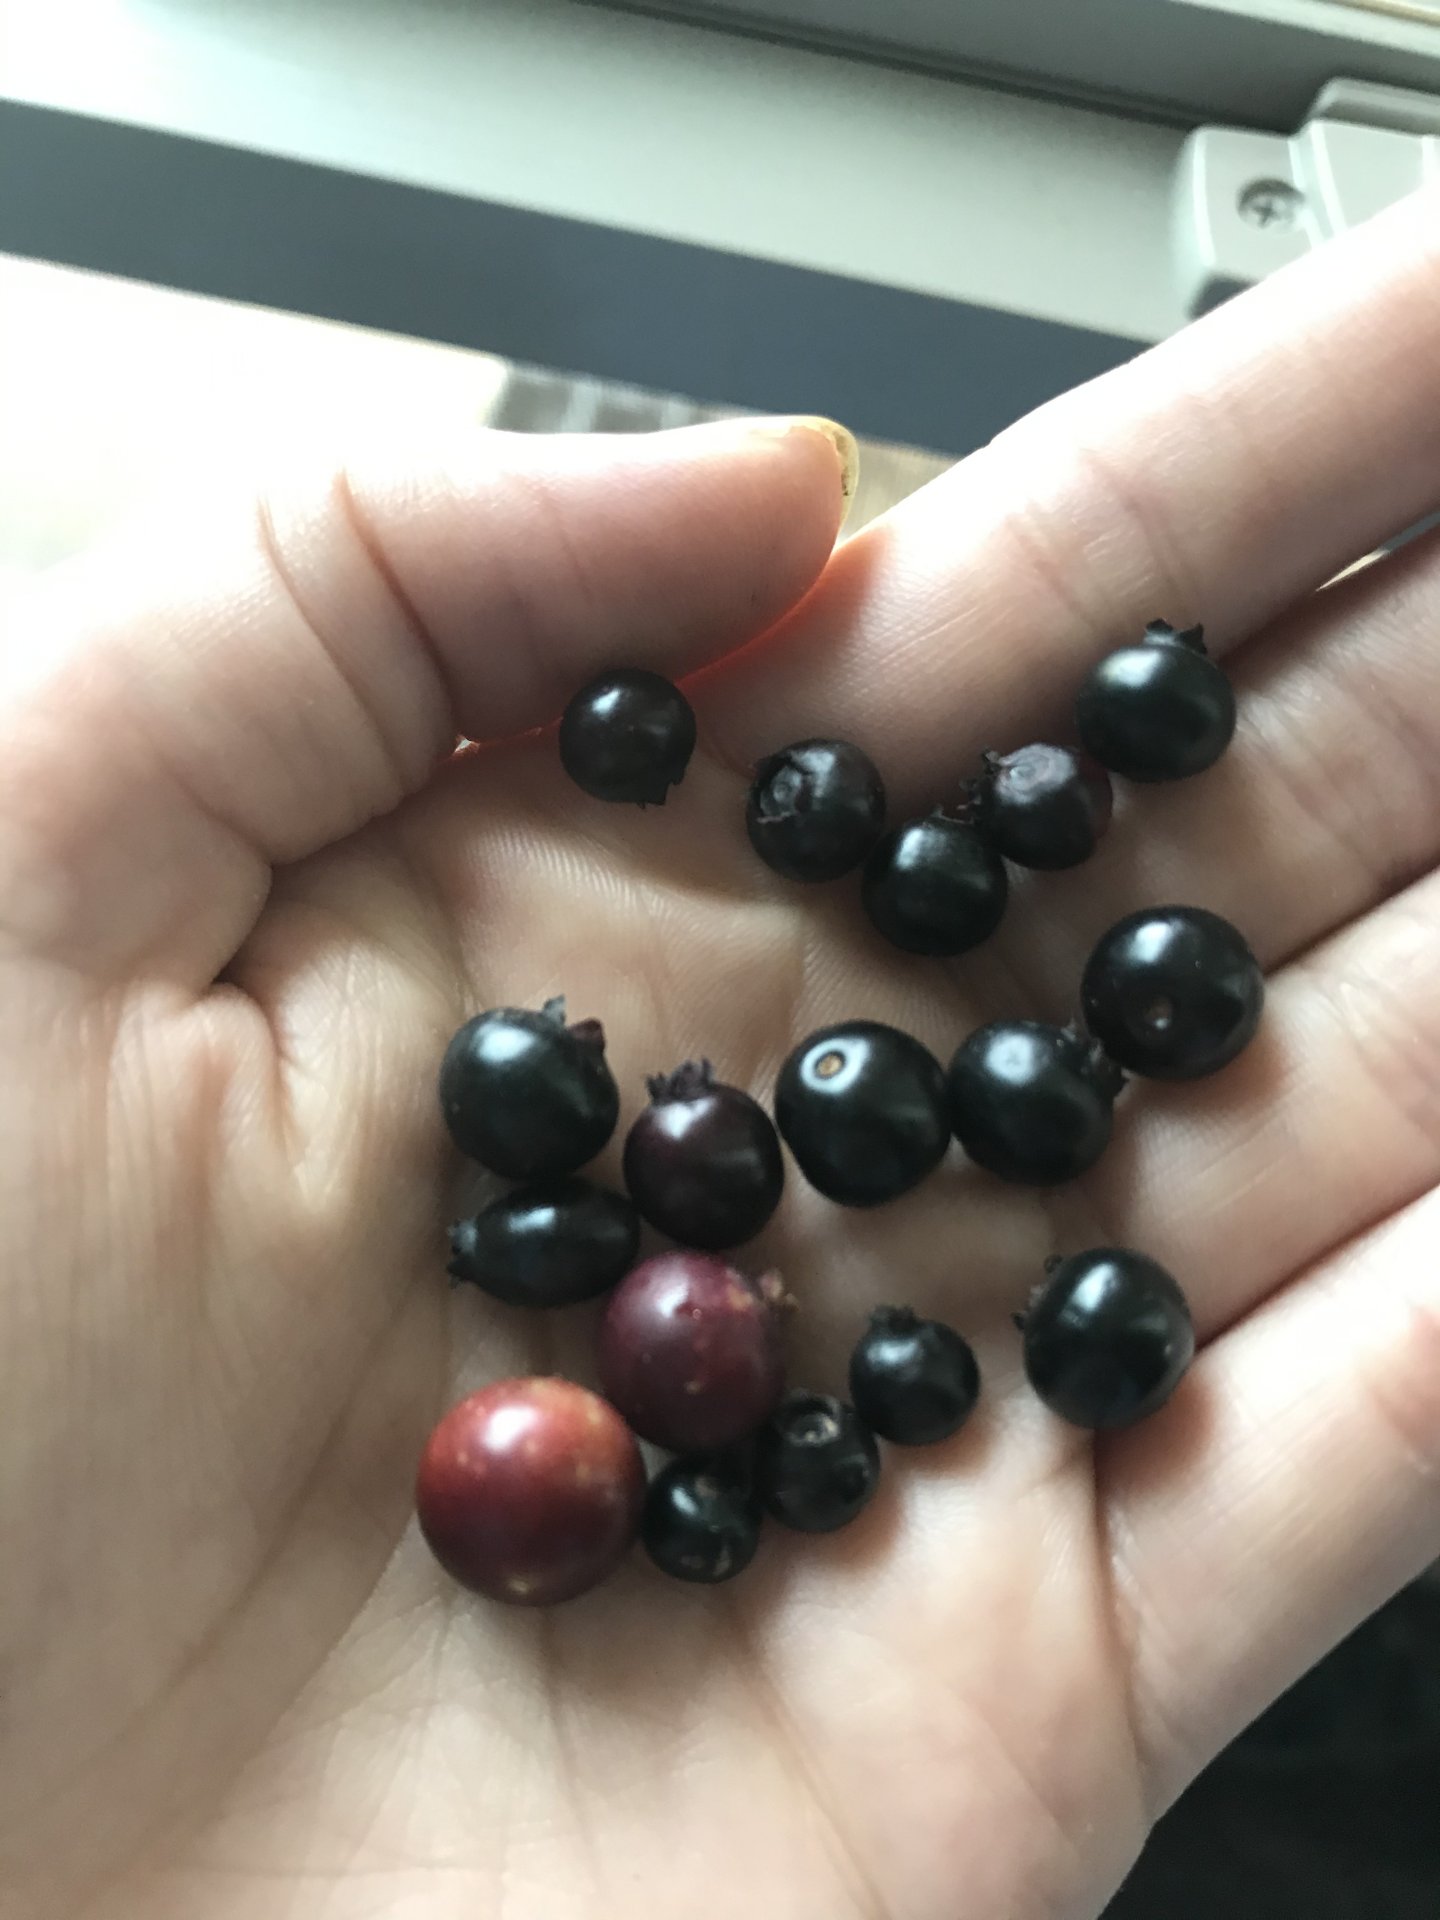 Wild blueberries size variation